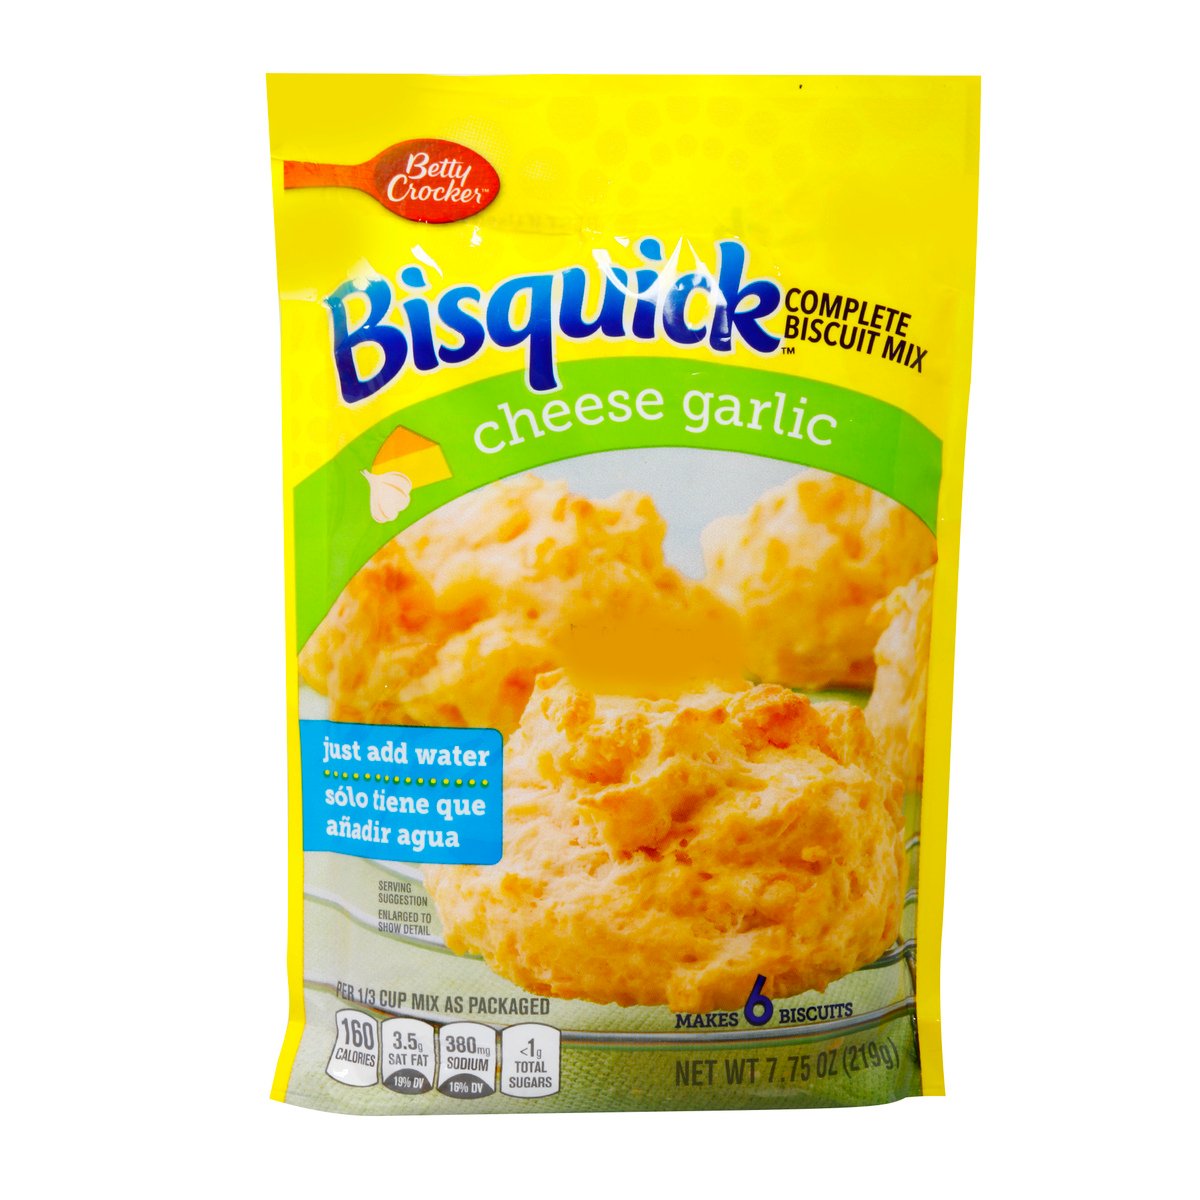 Betty Crocker Bisquick Cheese Garlic Biscuit Mix 219 g